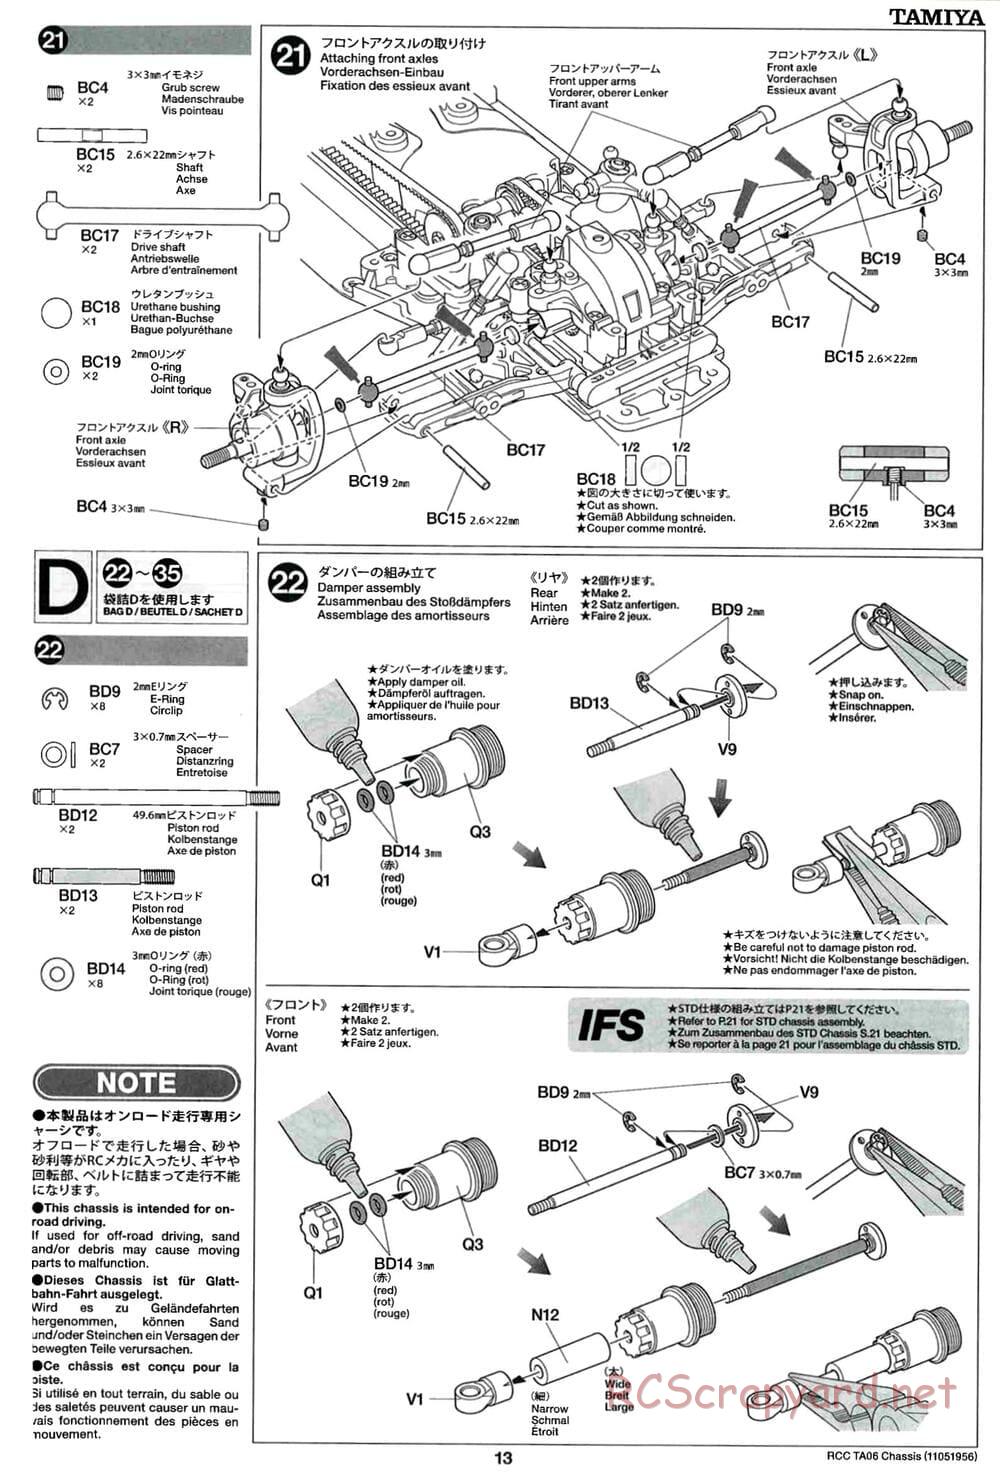 Tamiya - TA06 Chassis - Manual - Page 13